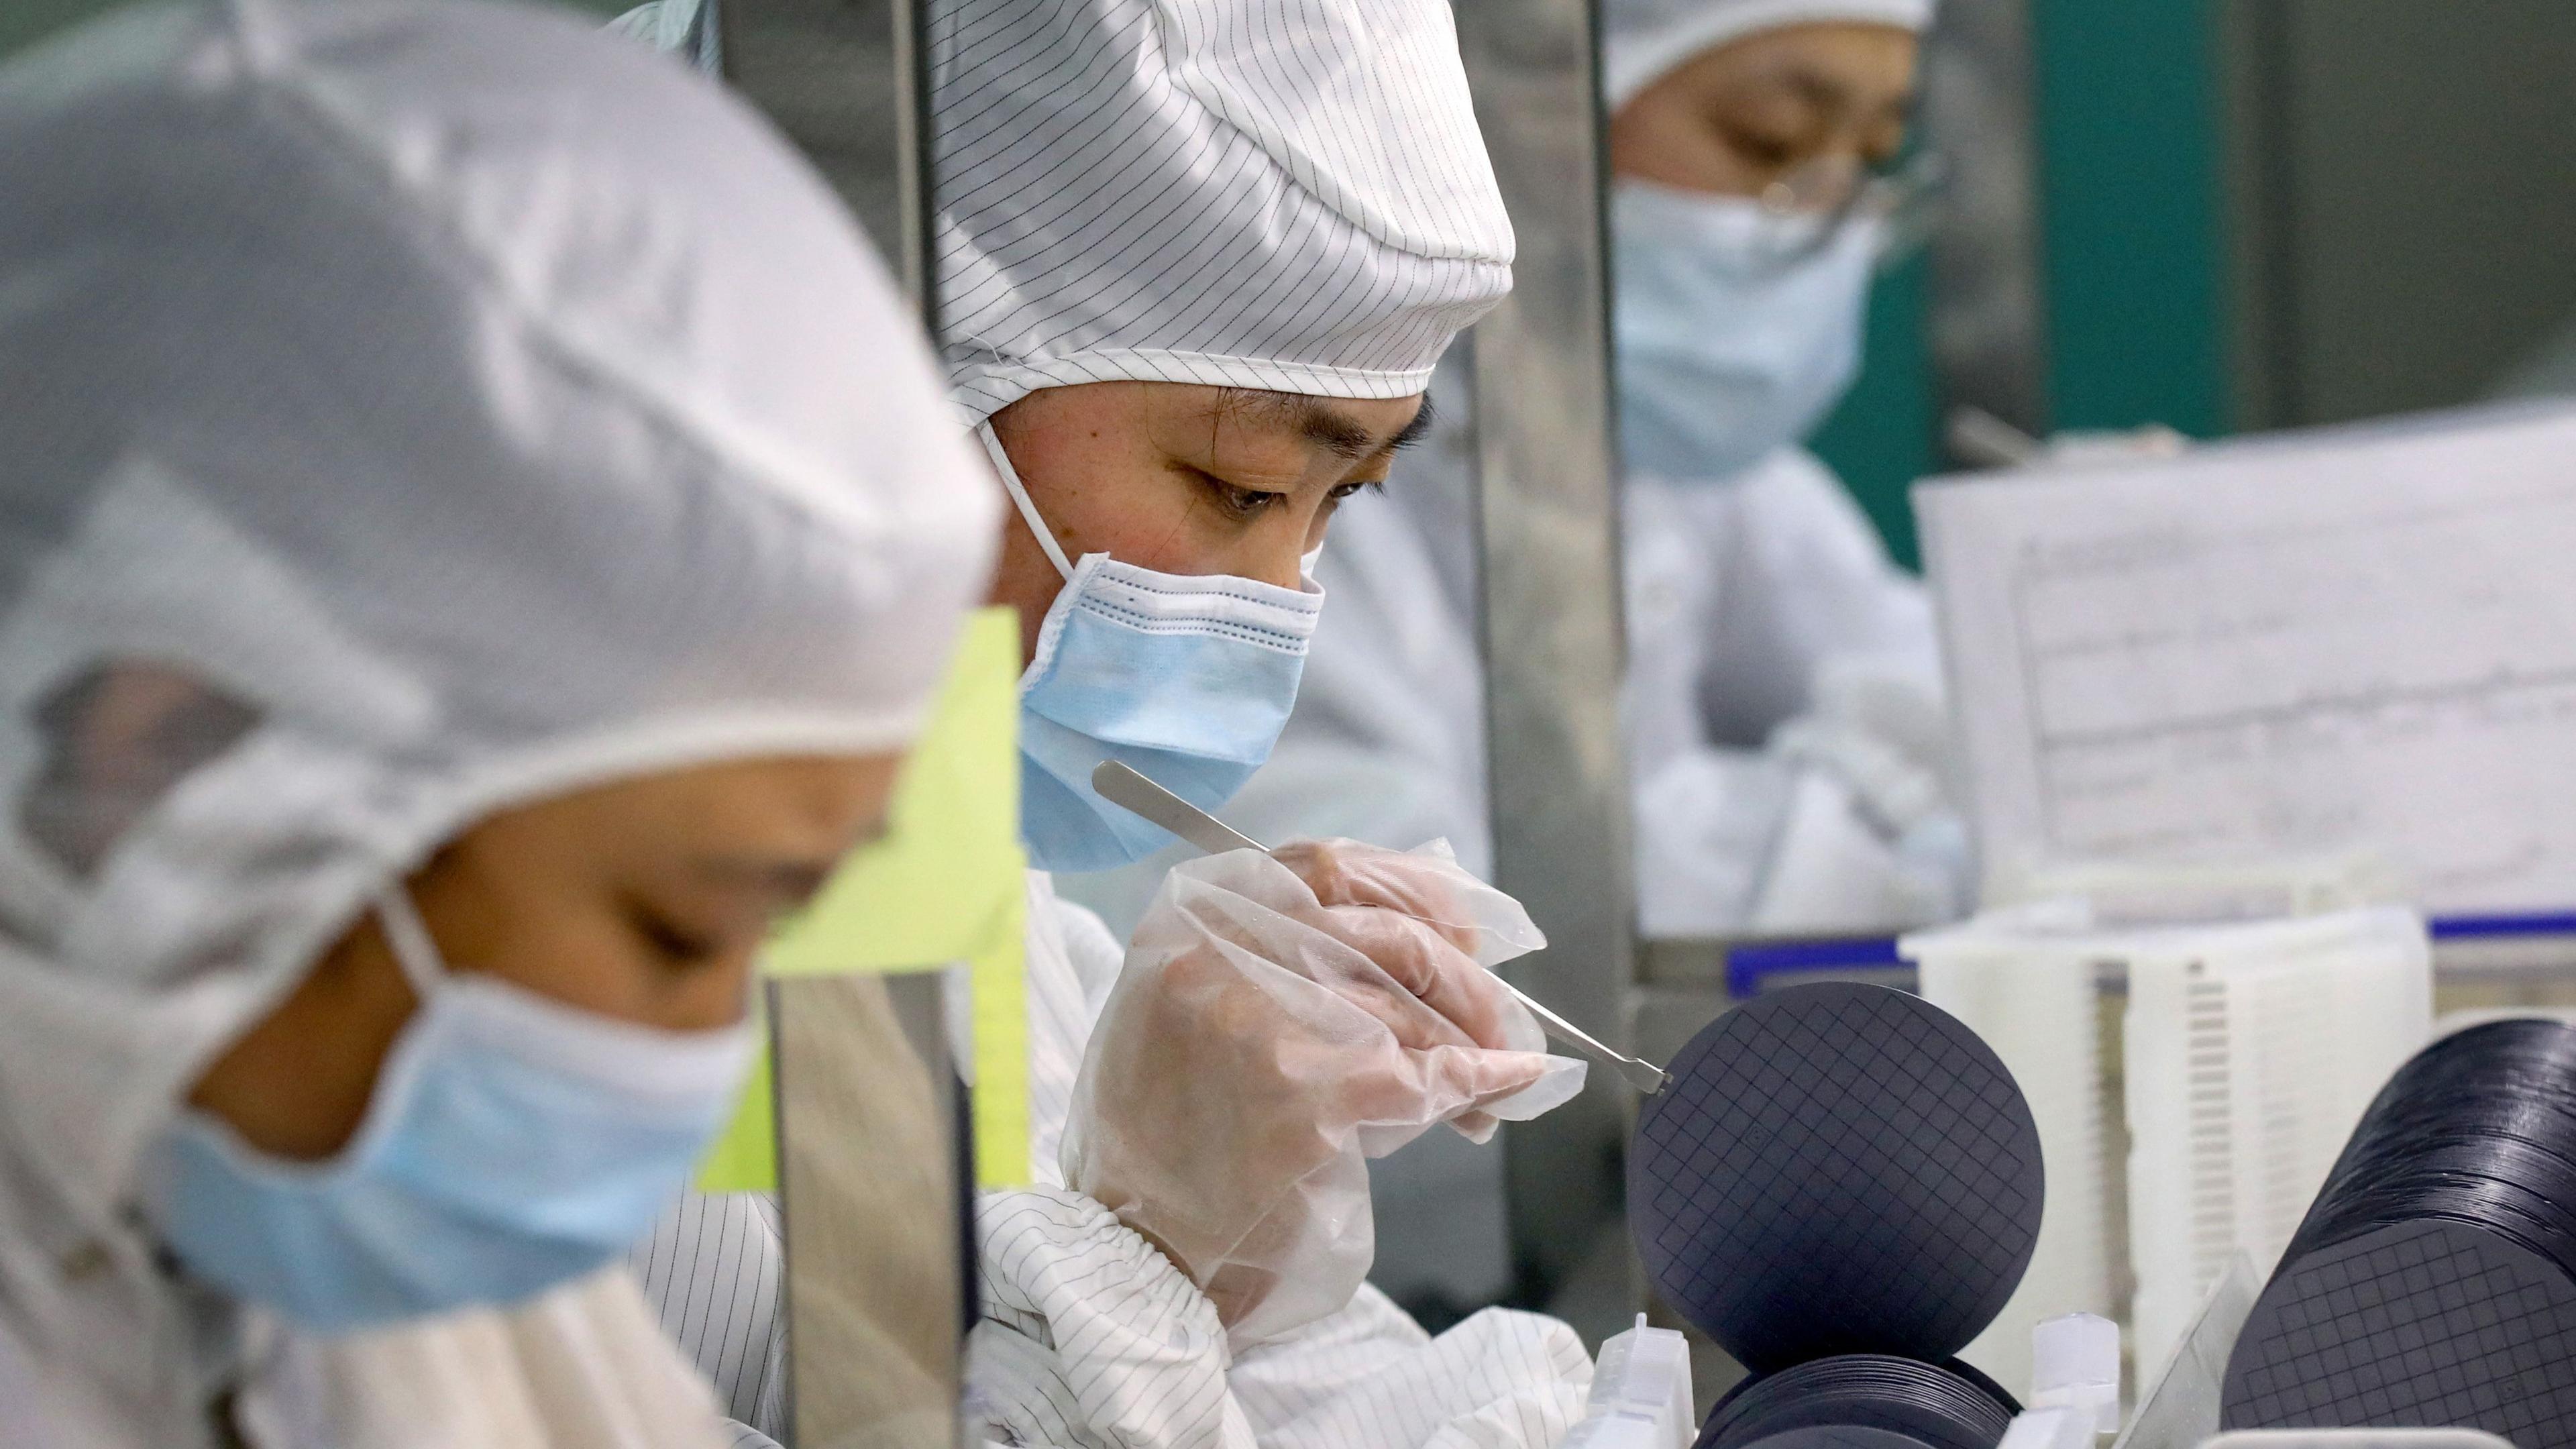 Chiptillverkning i Kina. Experter menar att västvärldens hårdare inställning till Kina när det gäller teknik är ett bakslag för regimen. Foto: STR/AFP via Getty Images